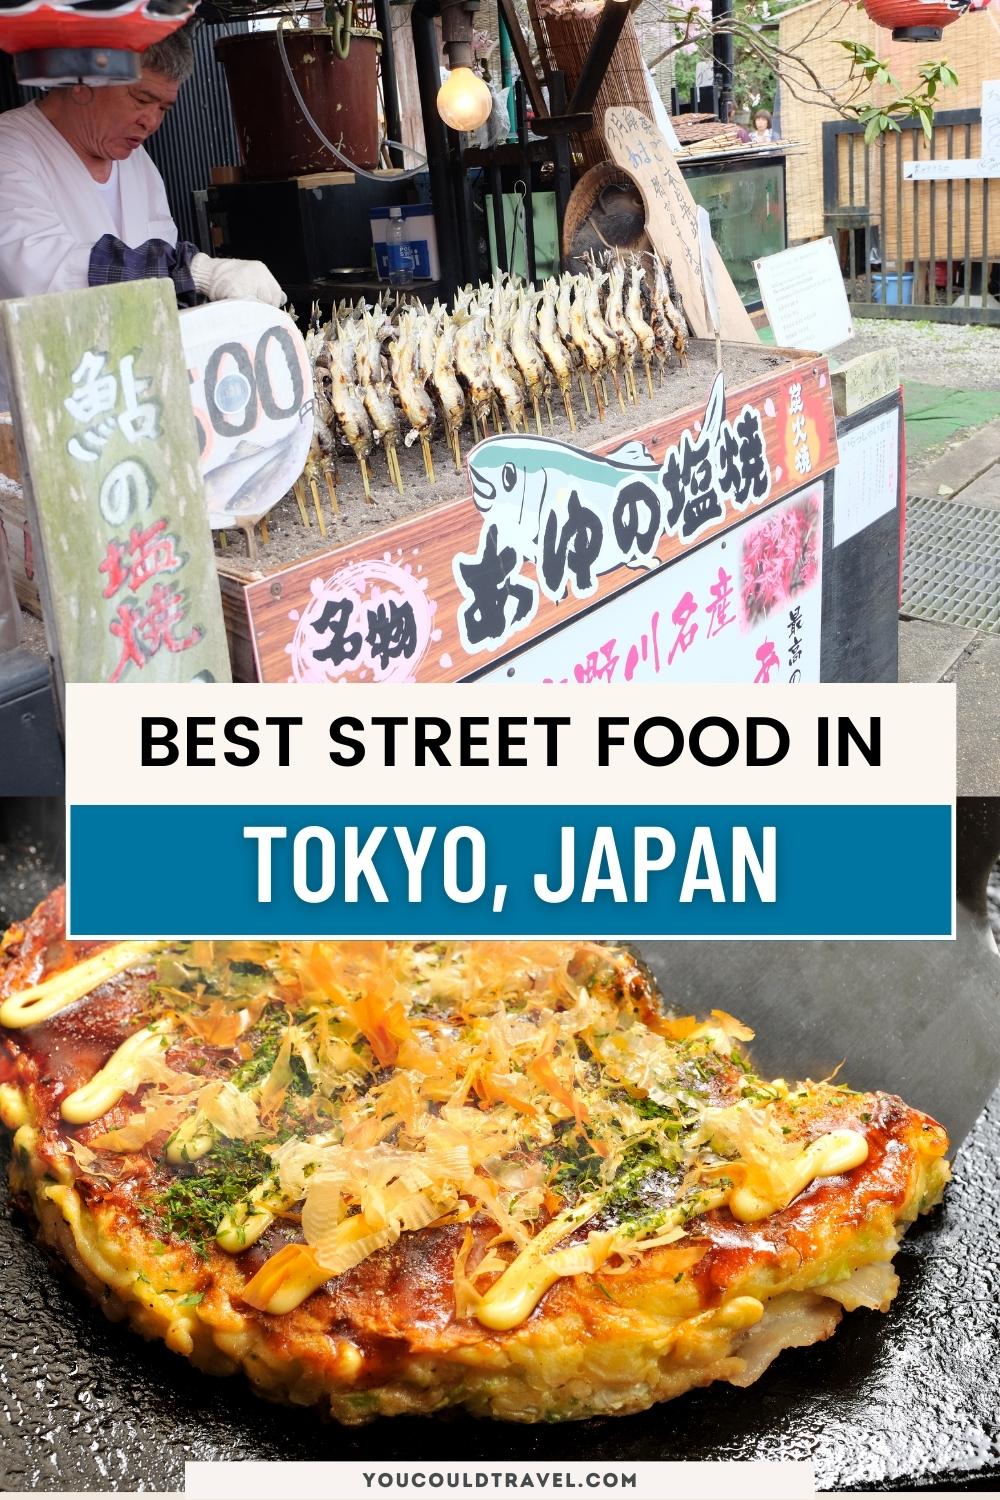 Top street food in Tokyo